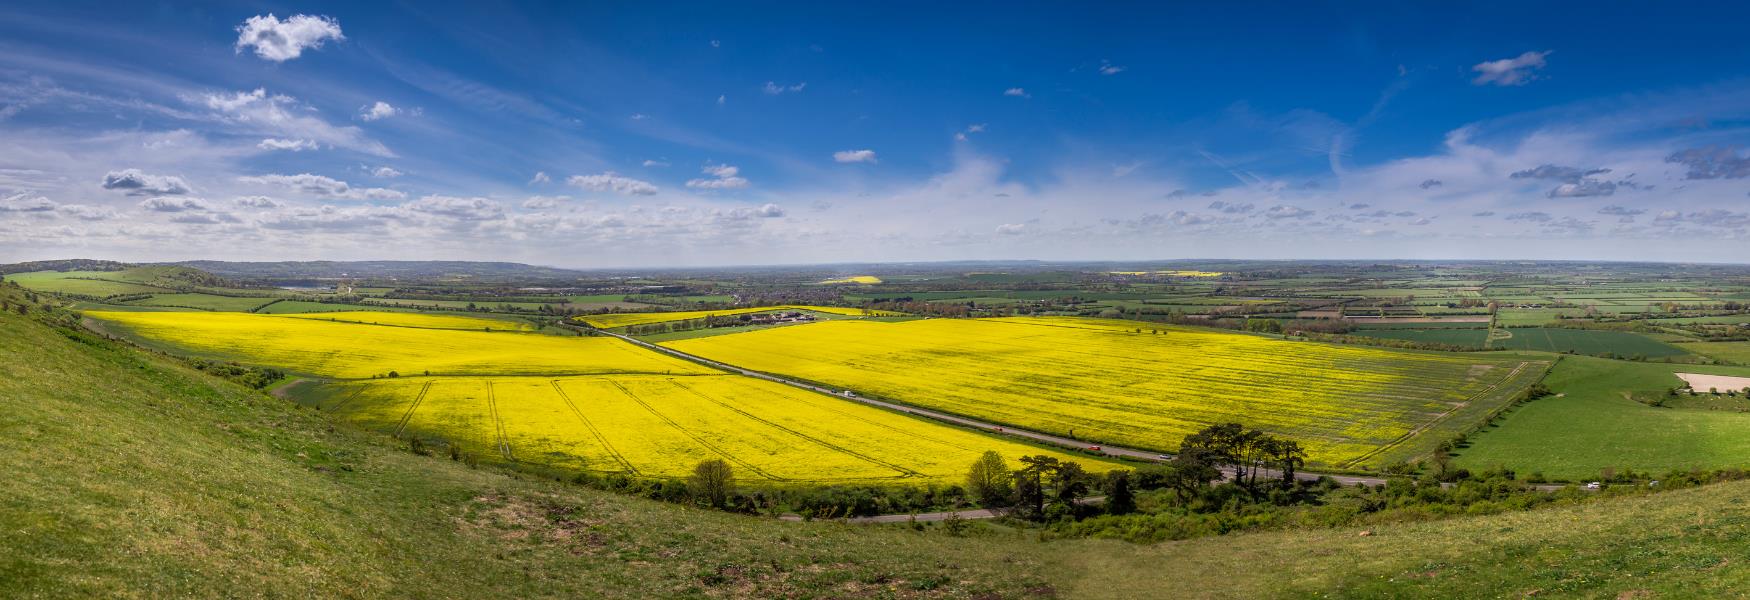 field in bedfordshire